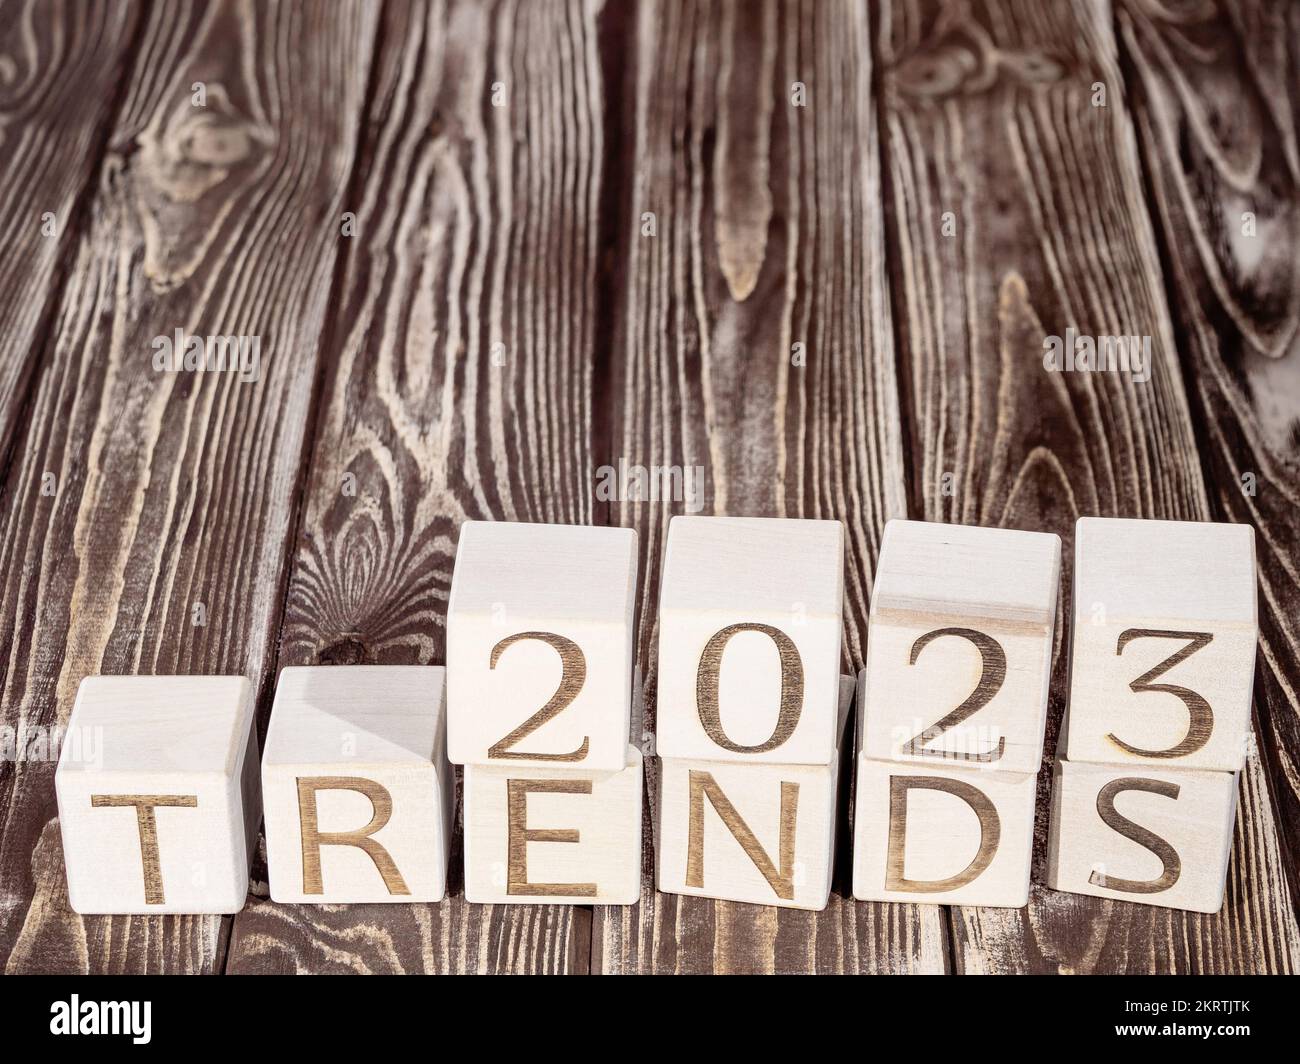 Texte 2023 TENDANCES sur les cubes de bois comme un concept de tendance moderne Banque D'Images